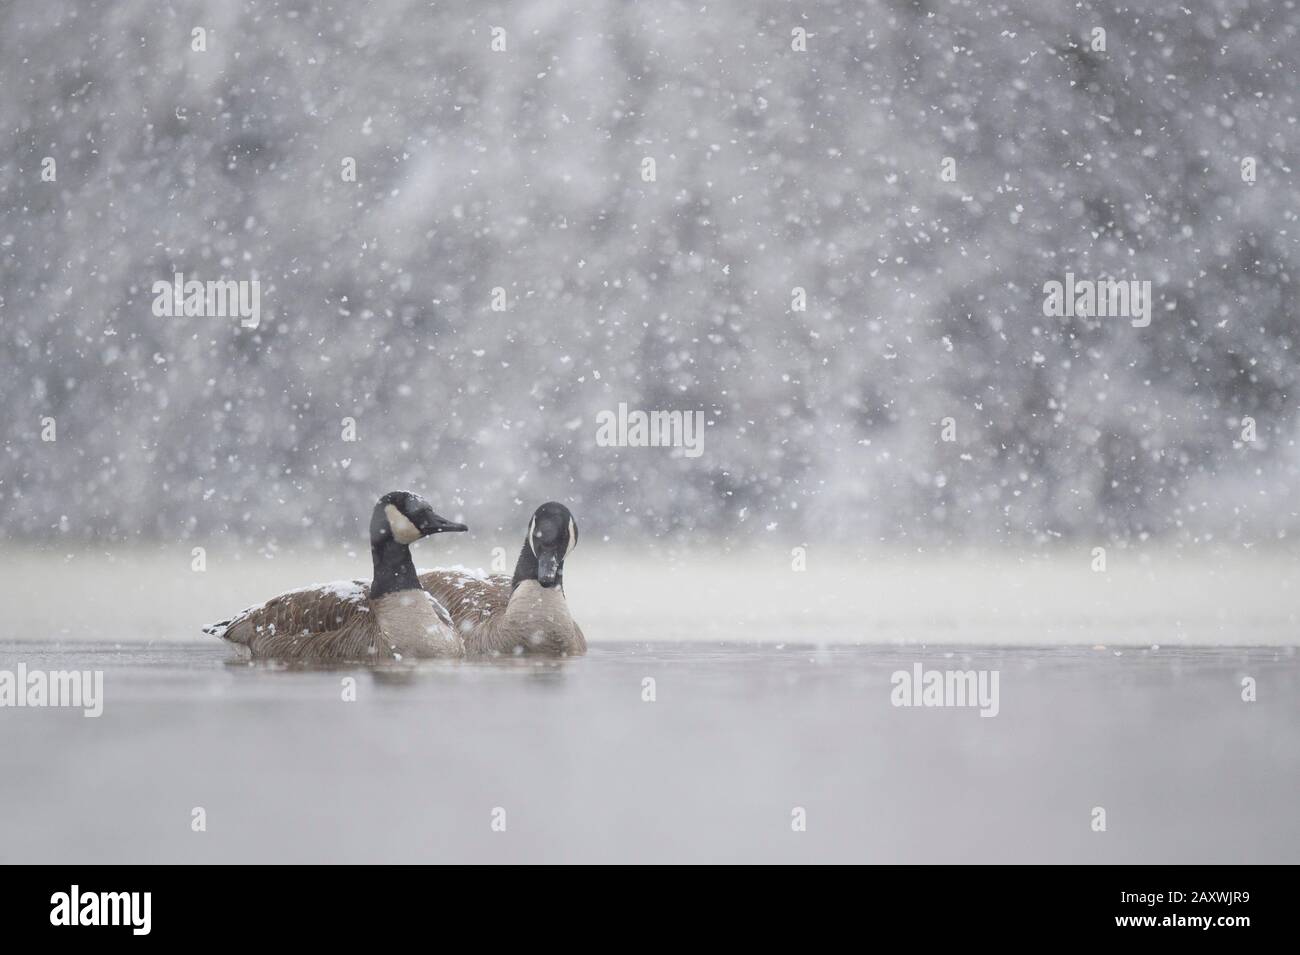 Un paio di Canada Geese nuotano nell'acqua ghiacciata fredda con la neve che cade in una fredda giornata invernale. Foto Stock